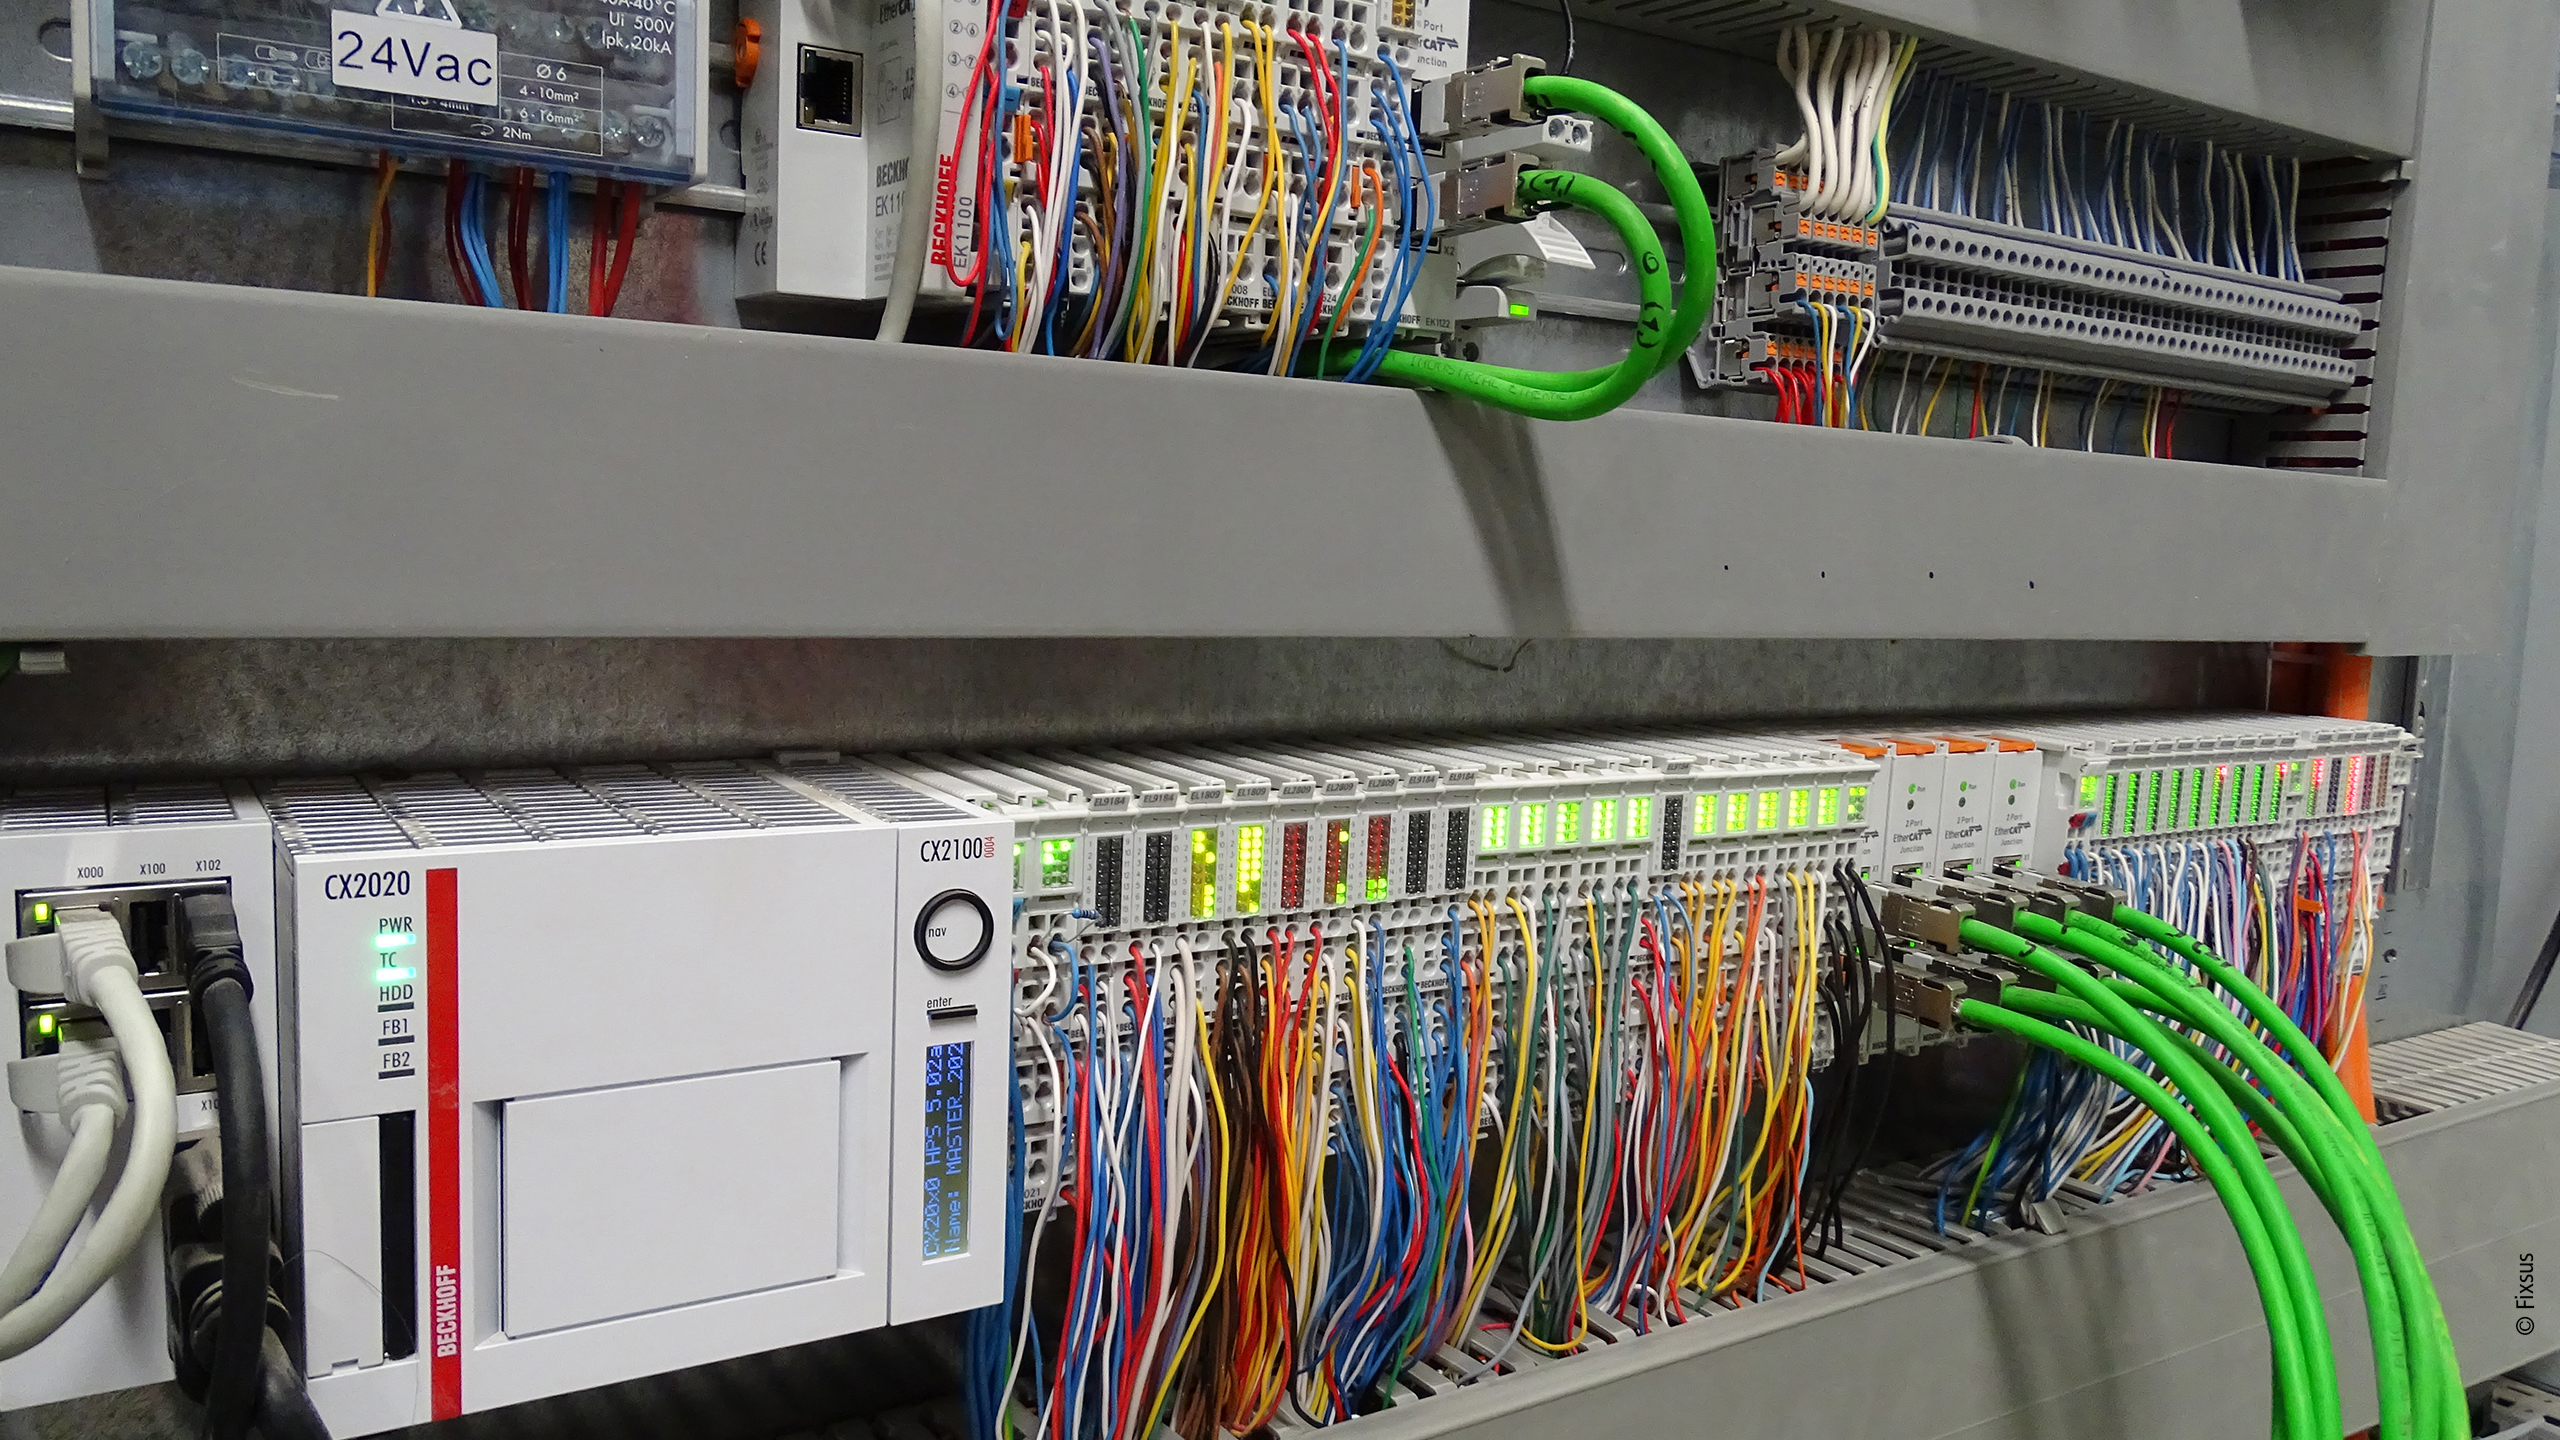 楼宇自动化系统的中央控制器采用的是一台 CX2020 嵌入式控制器，通过 EtherCAT 与 89 个分布式 I/O 站（每个房间 1 个）连接，总共有 700 多个 I/O 模块。  